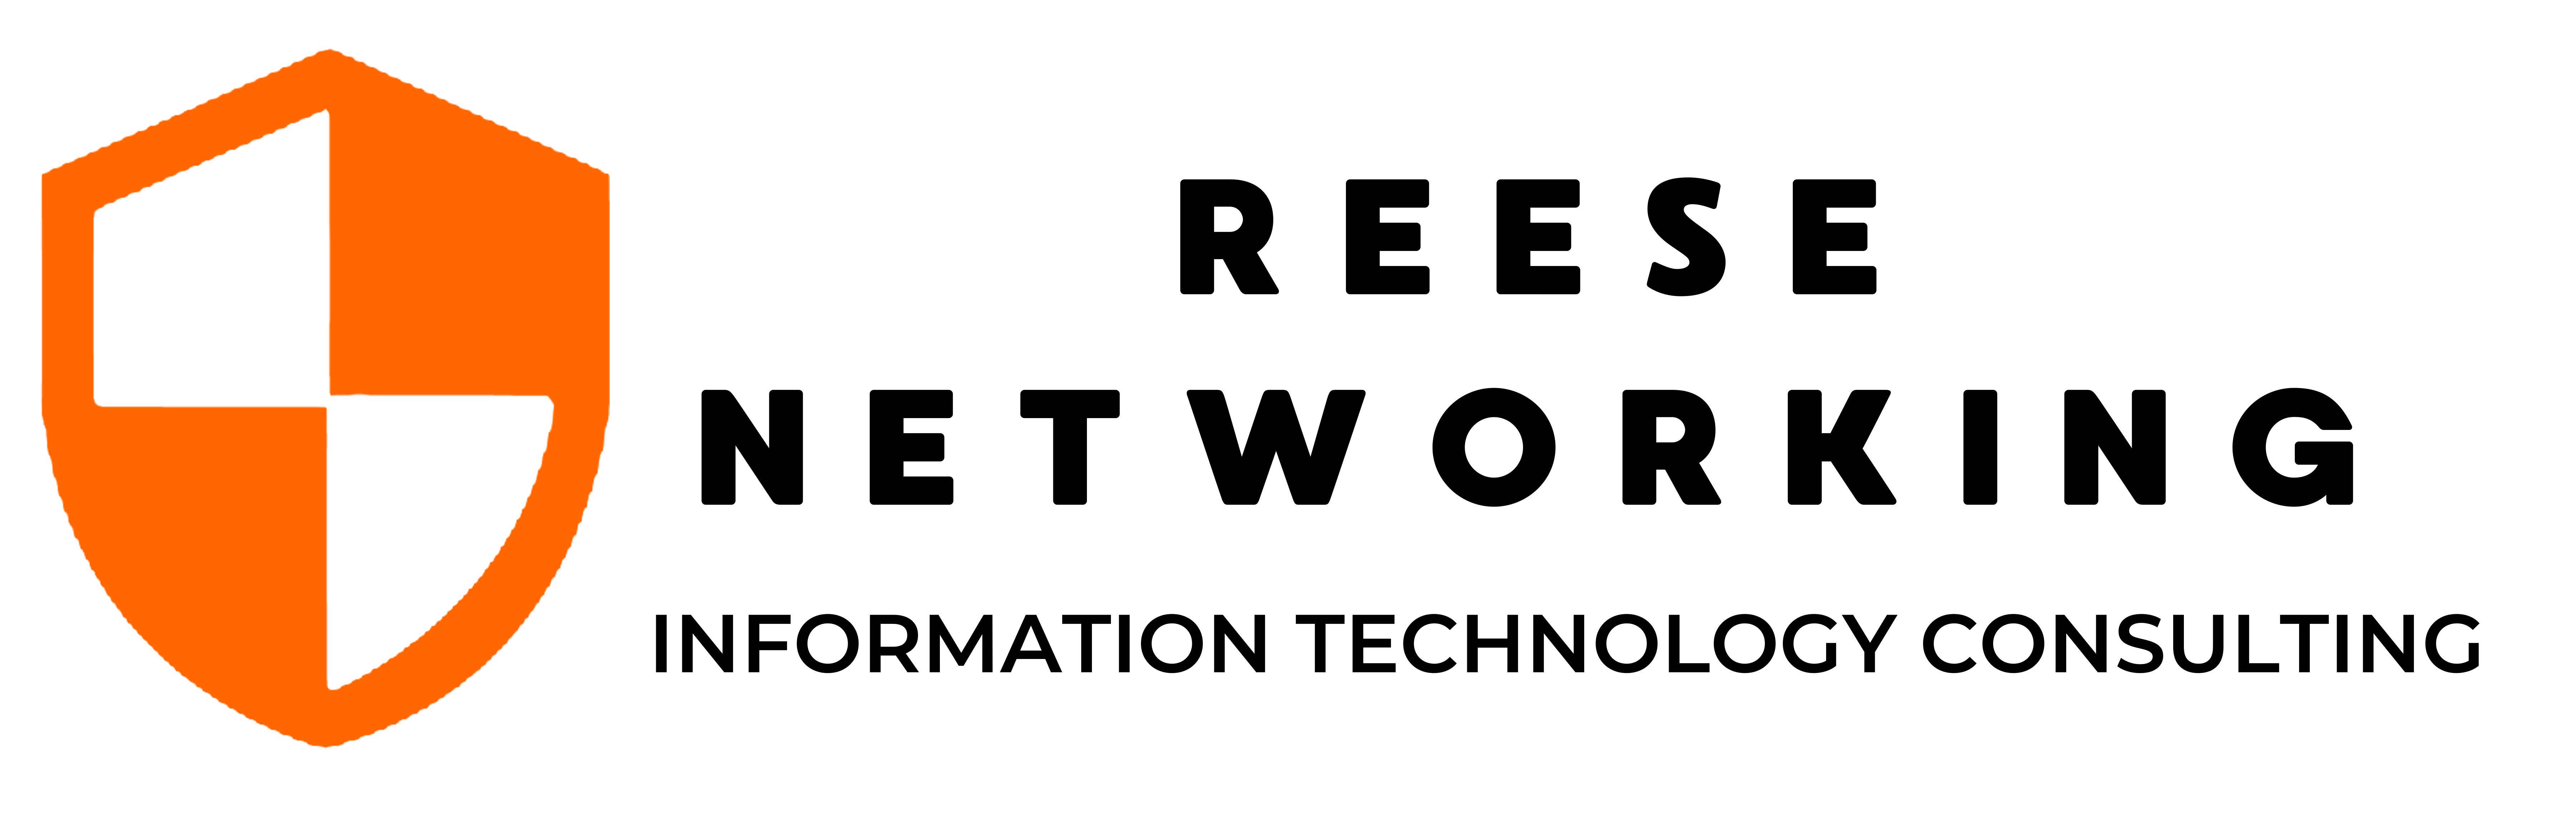 Image for Member Spotlight - Reese Networking